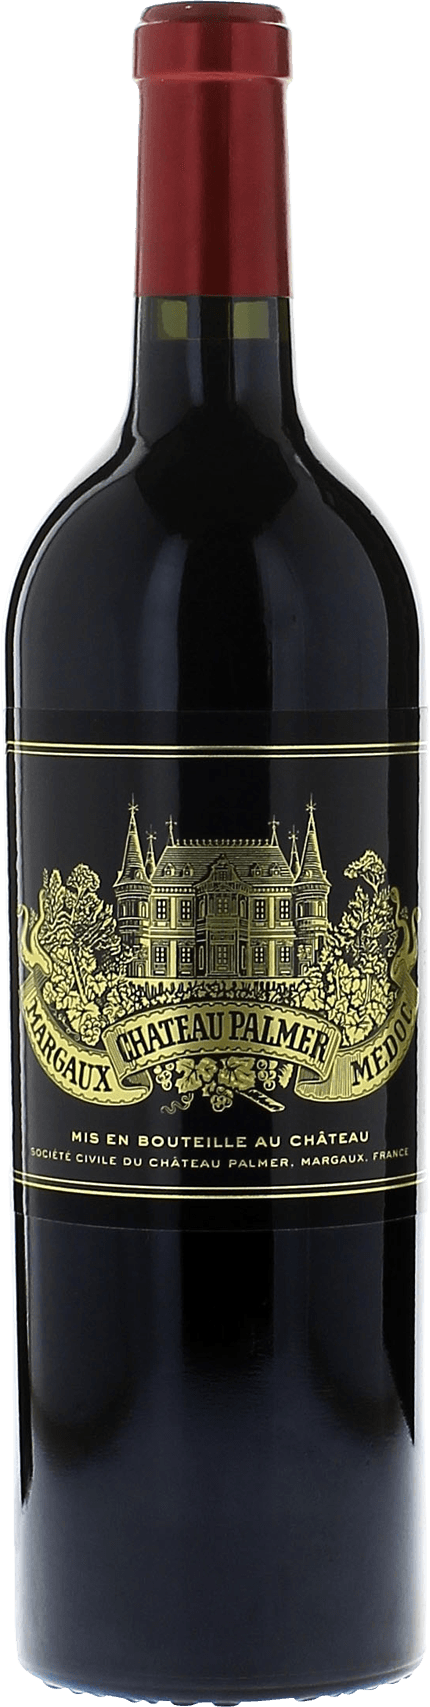 Palmer 2019 3me Grand cru class Margaux, Bordeaux rouge